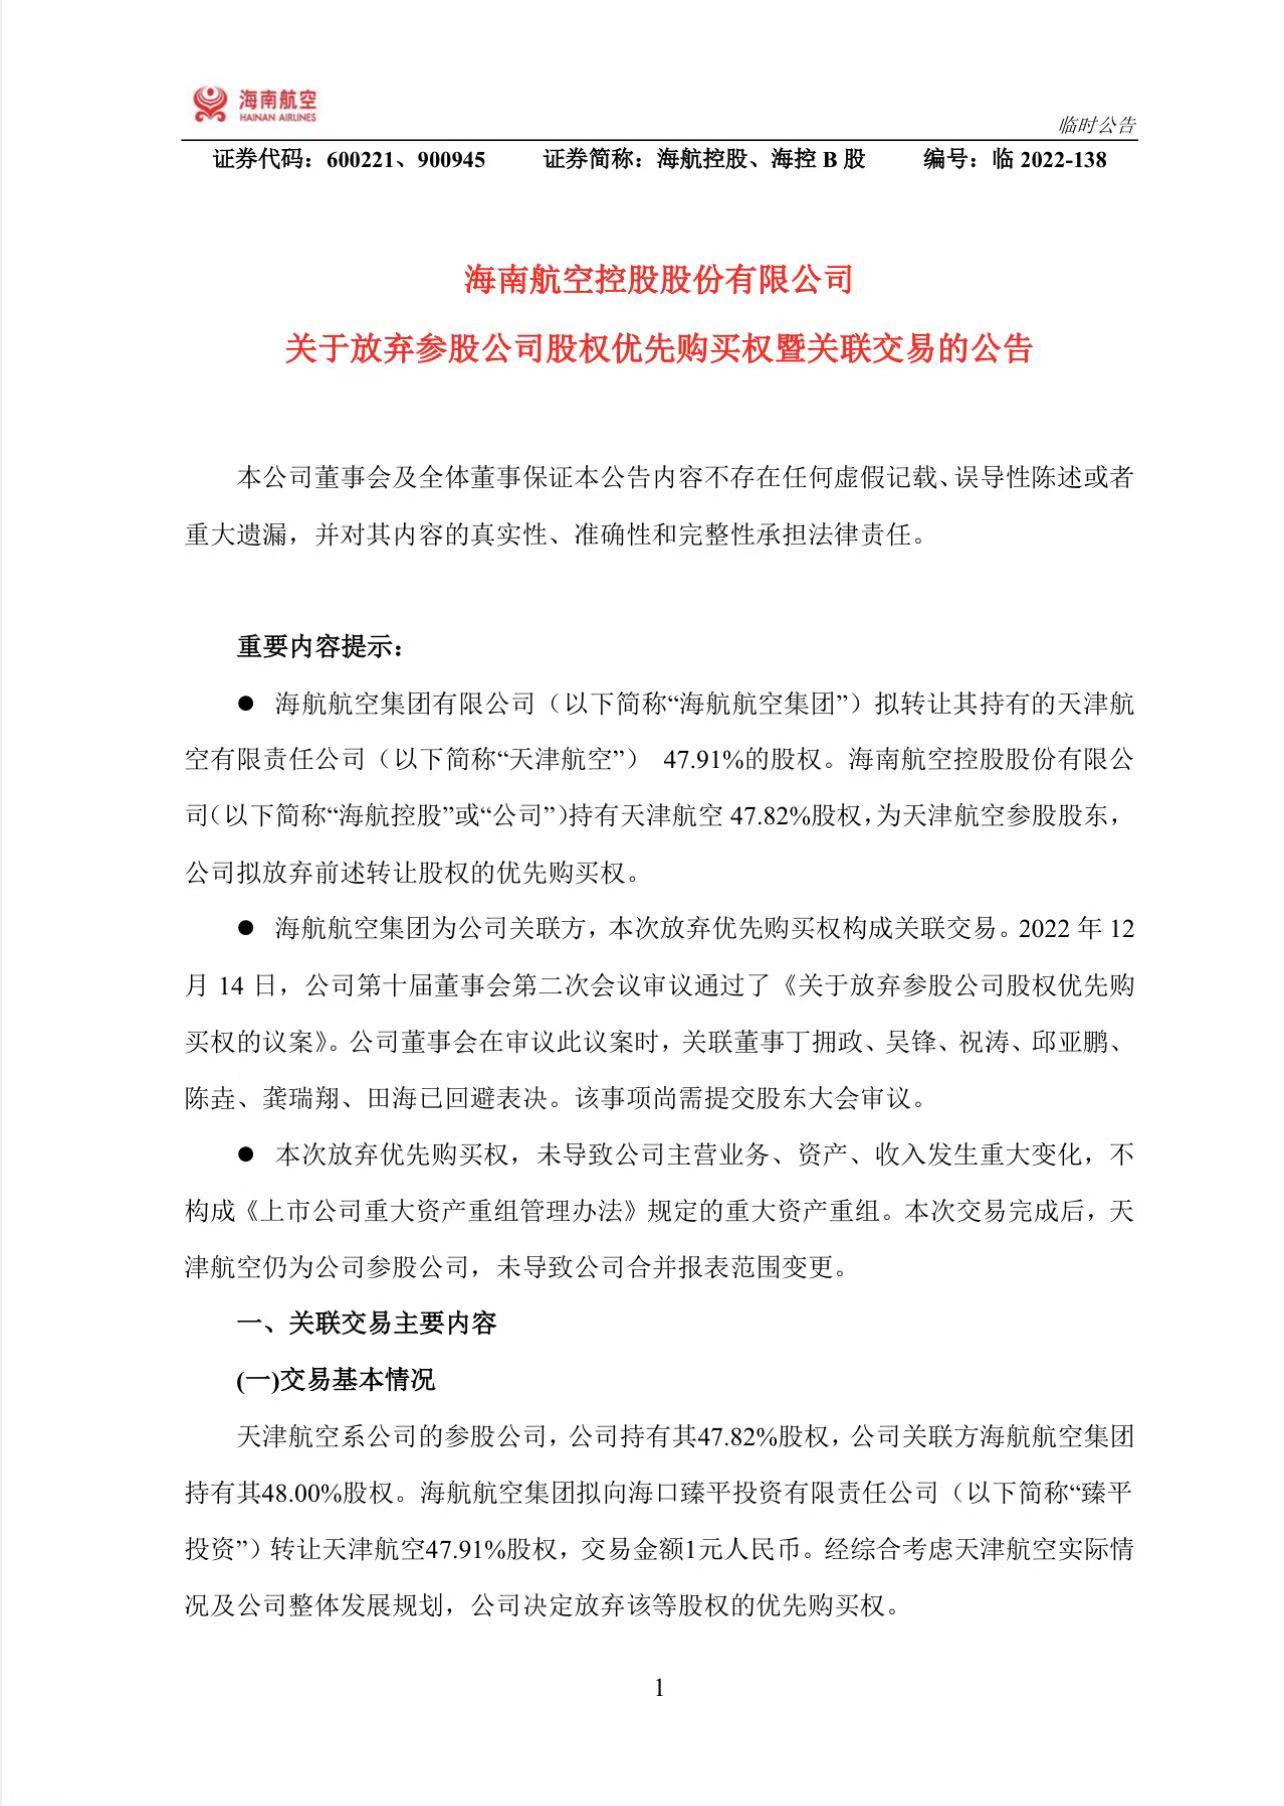 海航航空集团拟1元转让天津航空47.91%股权